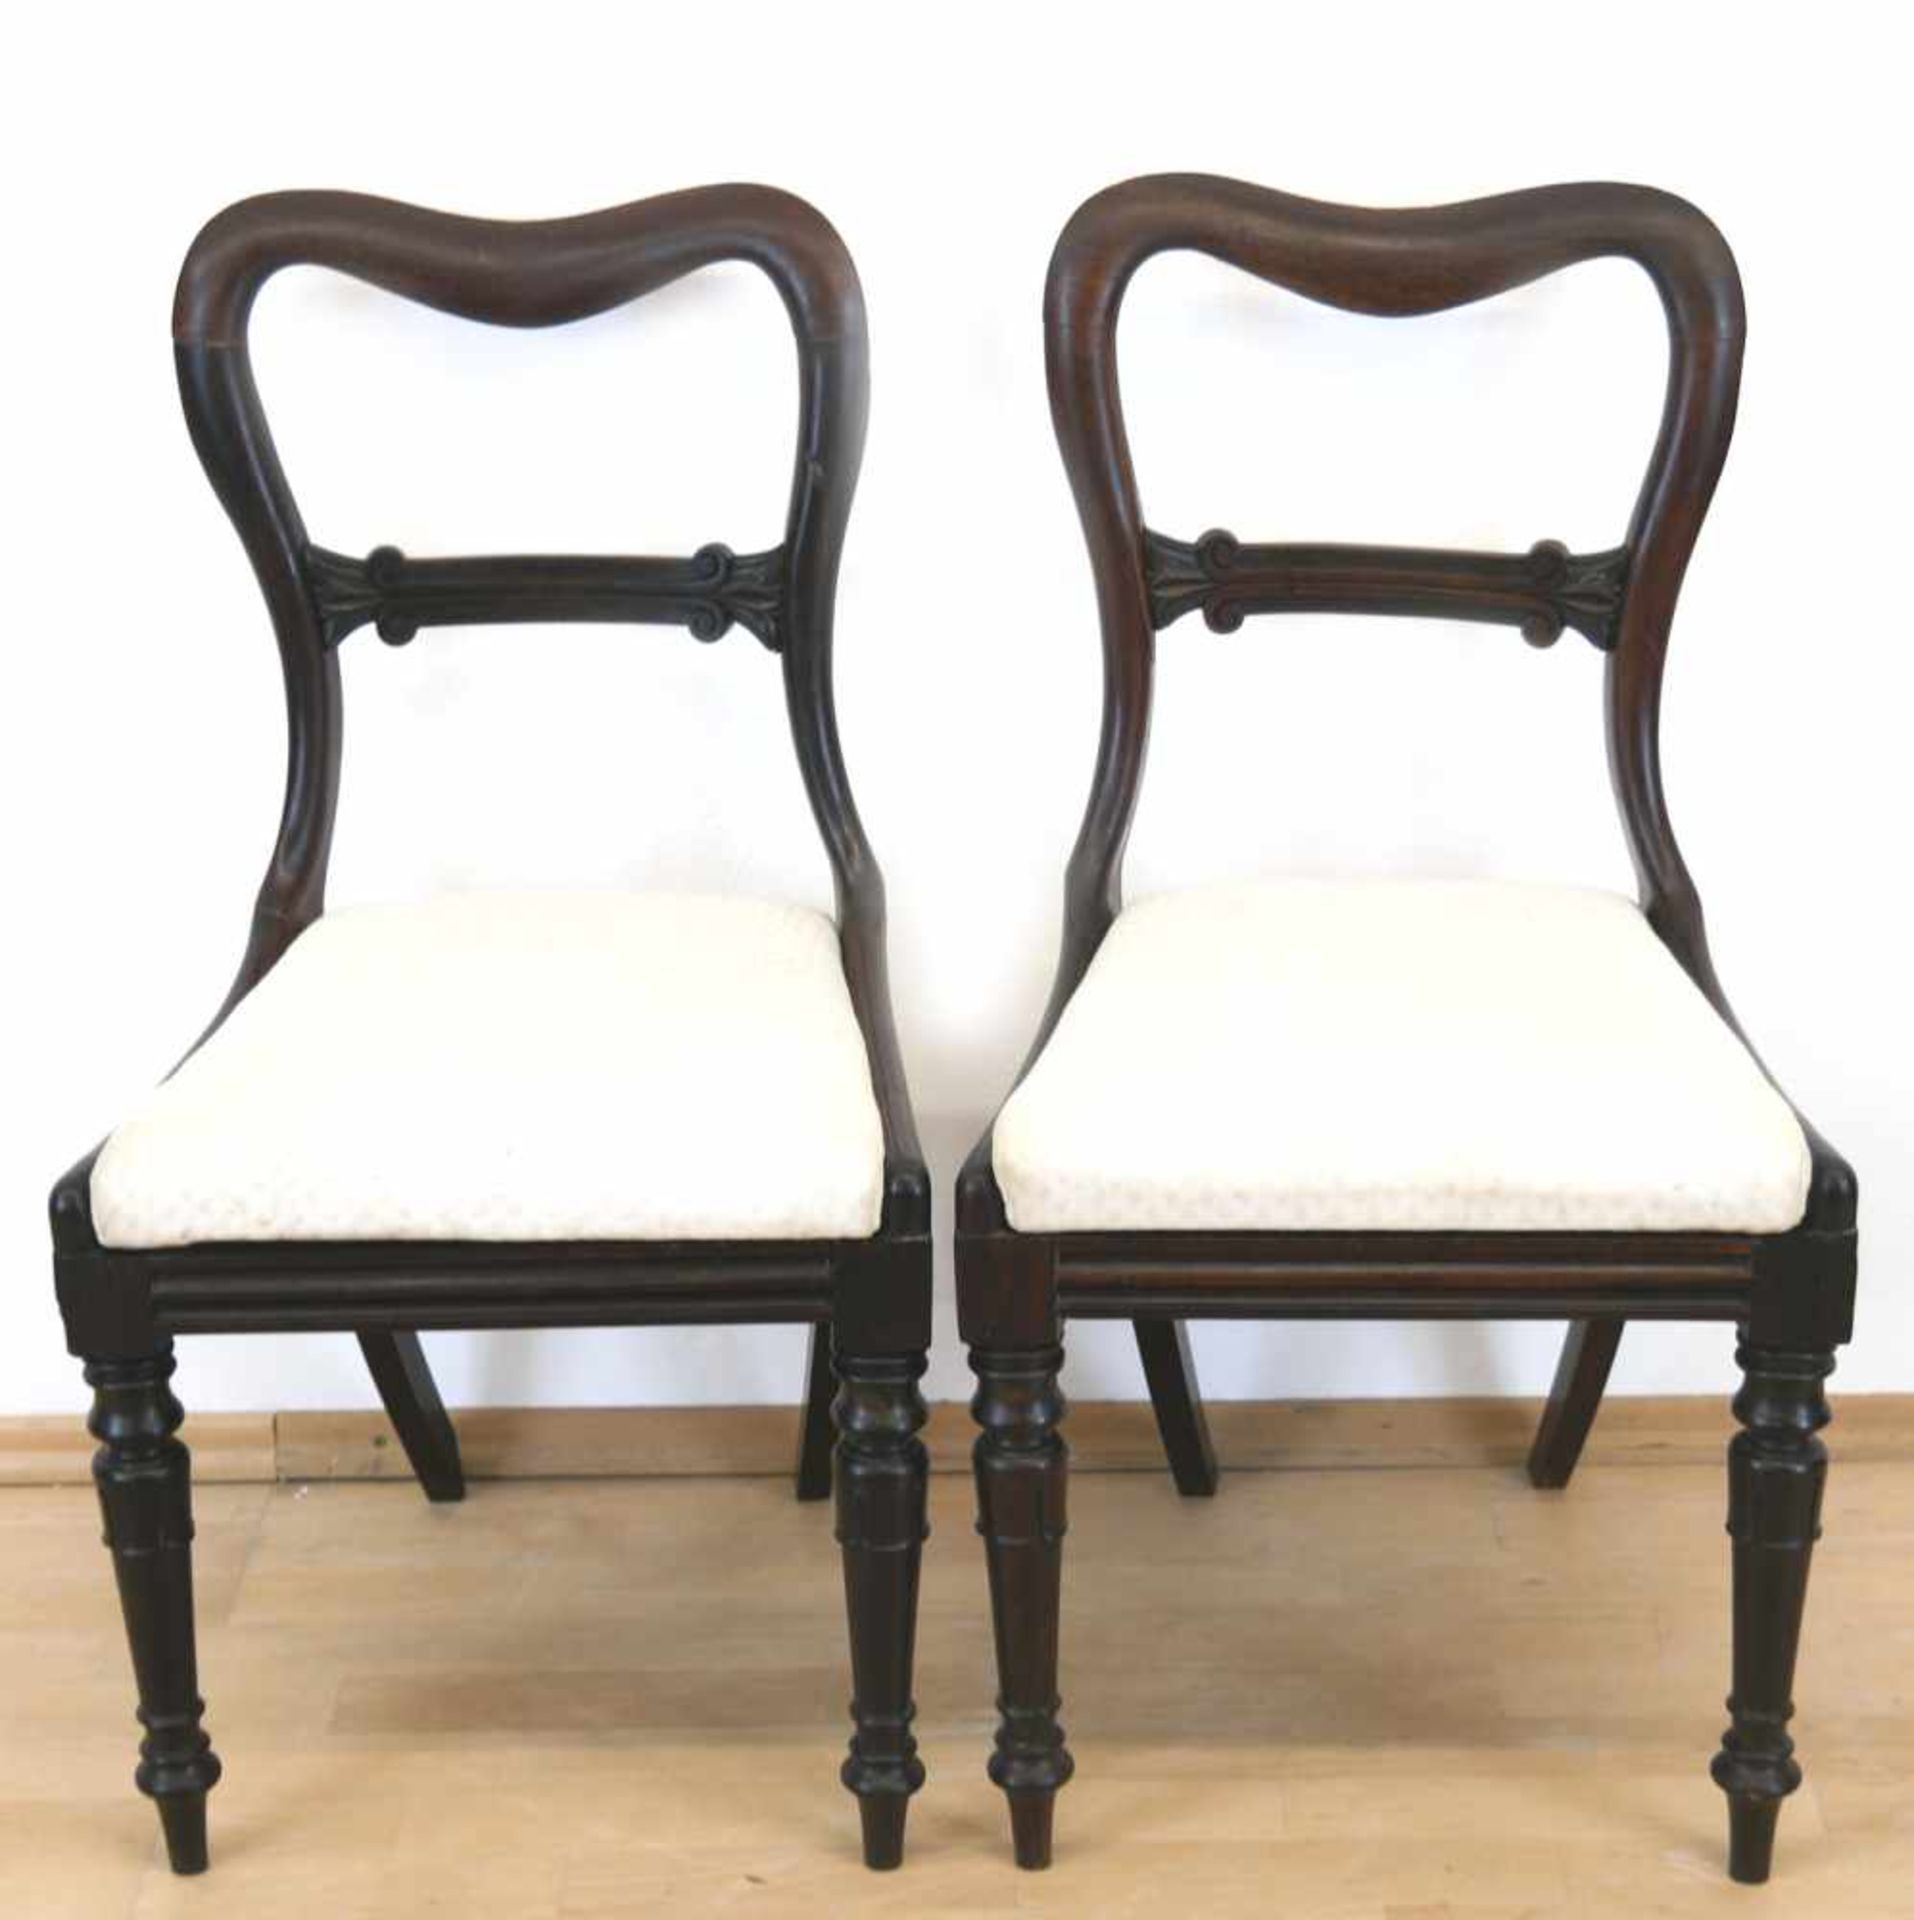 Paar Stühle, England um 1860, Palisander, gepolsterter Sitz mit hellem Stoffbezug, offene